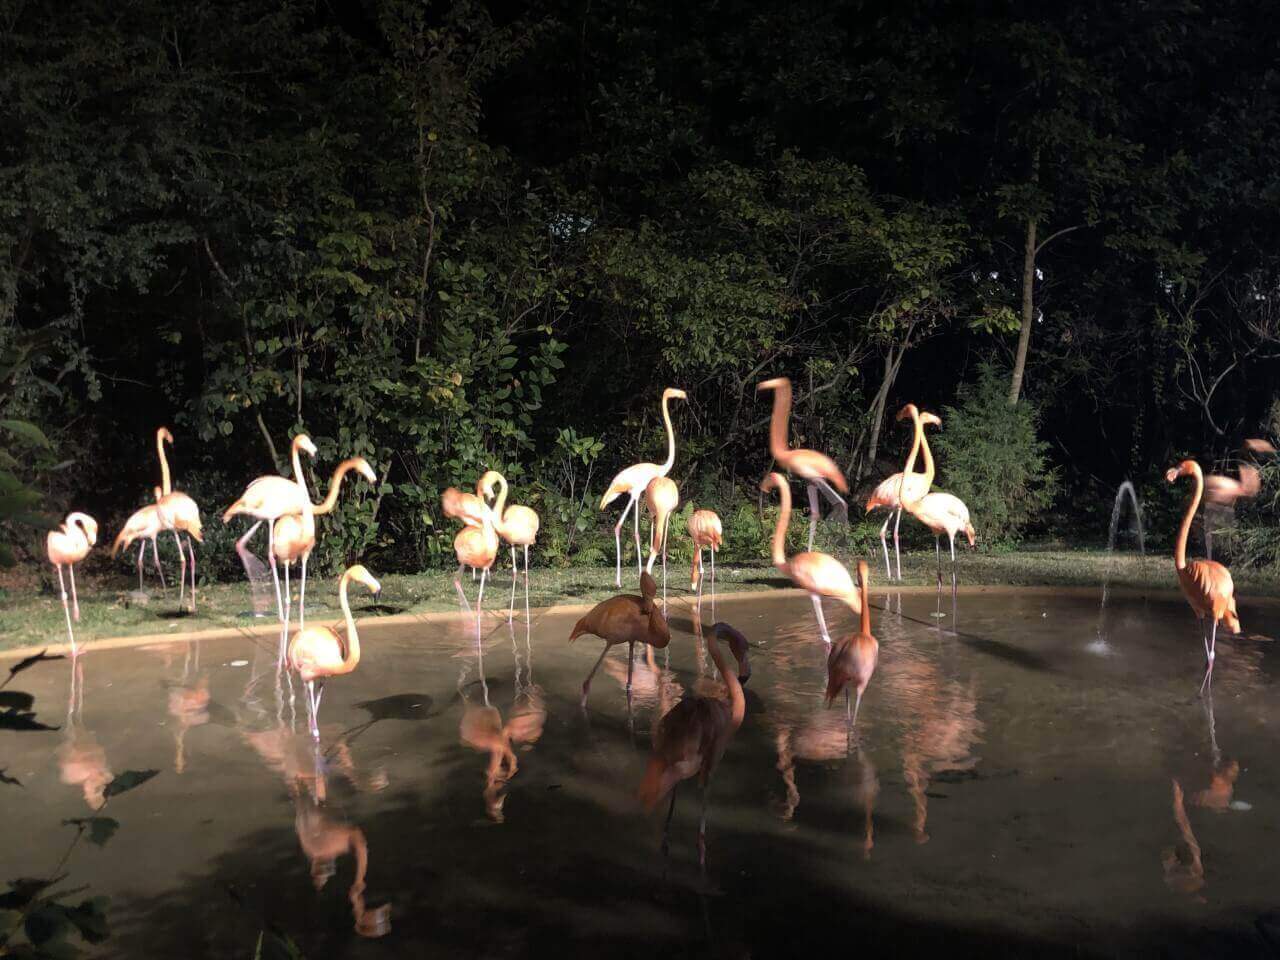 The Flamingo Exhibit at the 2019 Sunset Safari